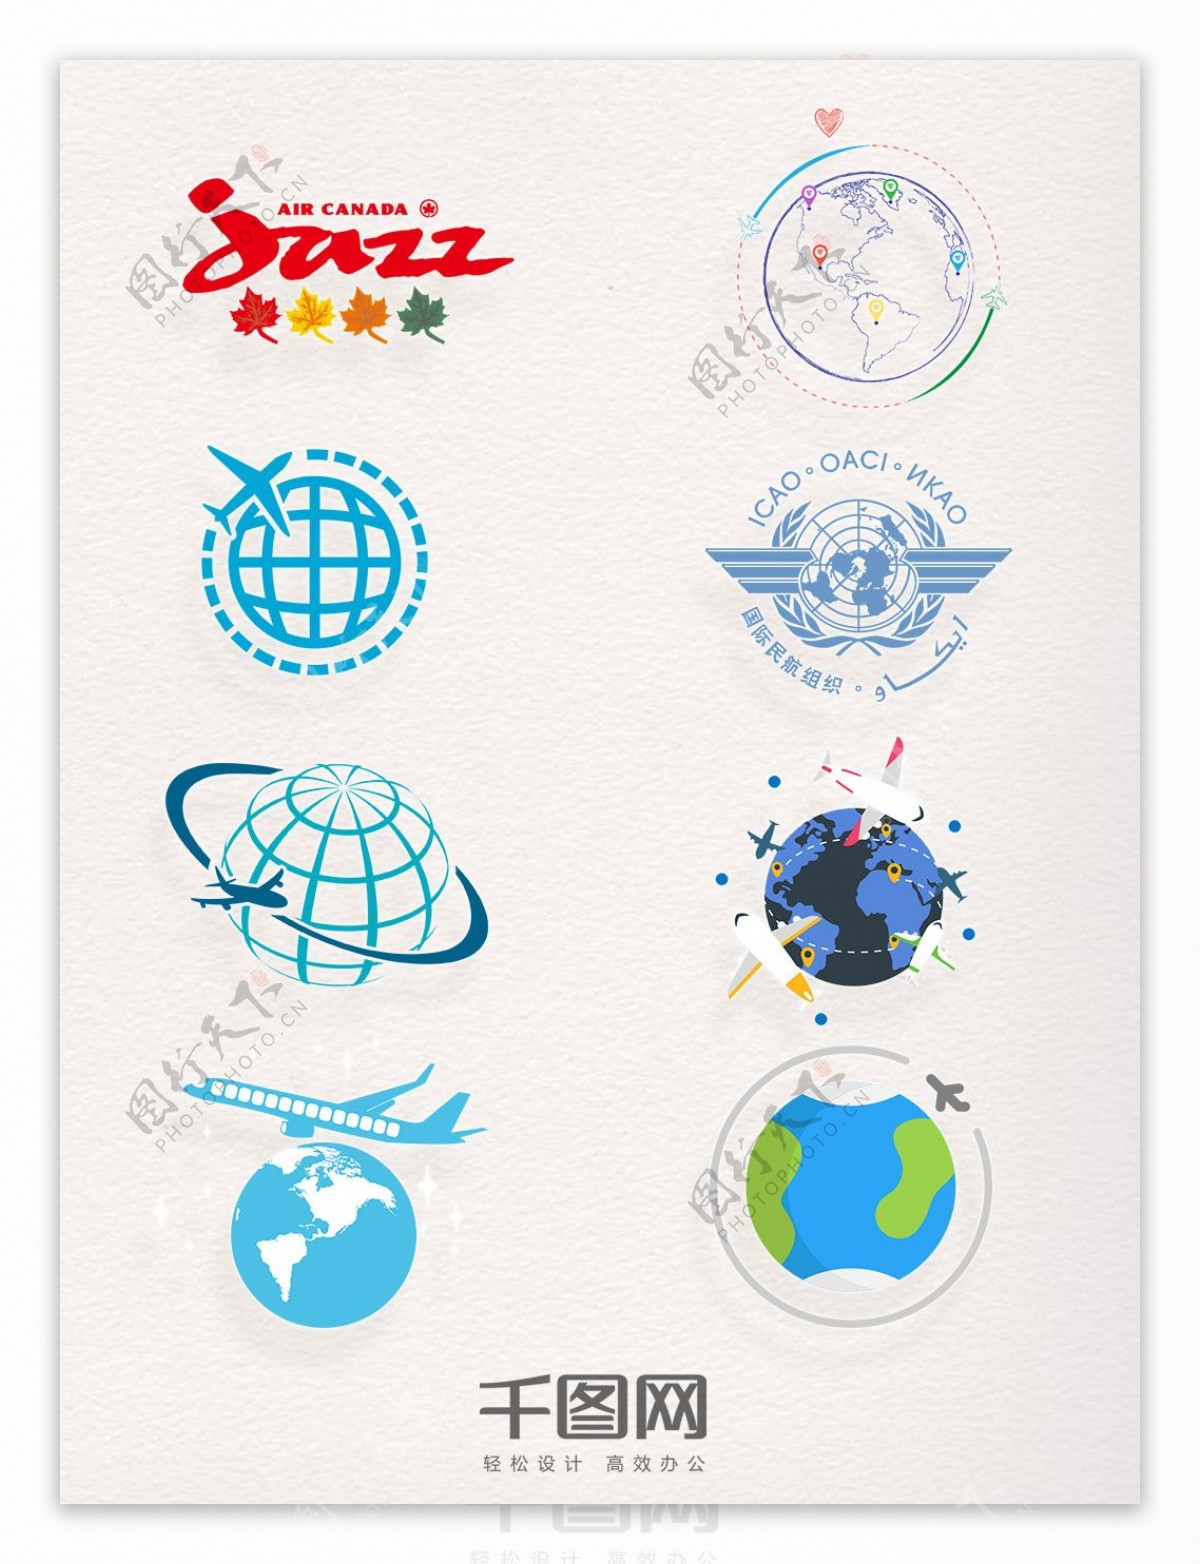 一组国际民航日简洁大气航空图标